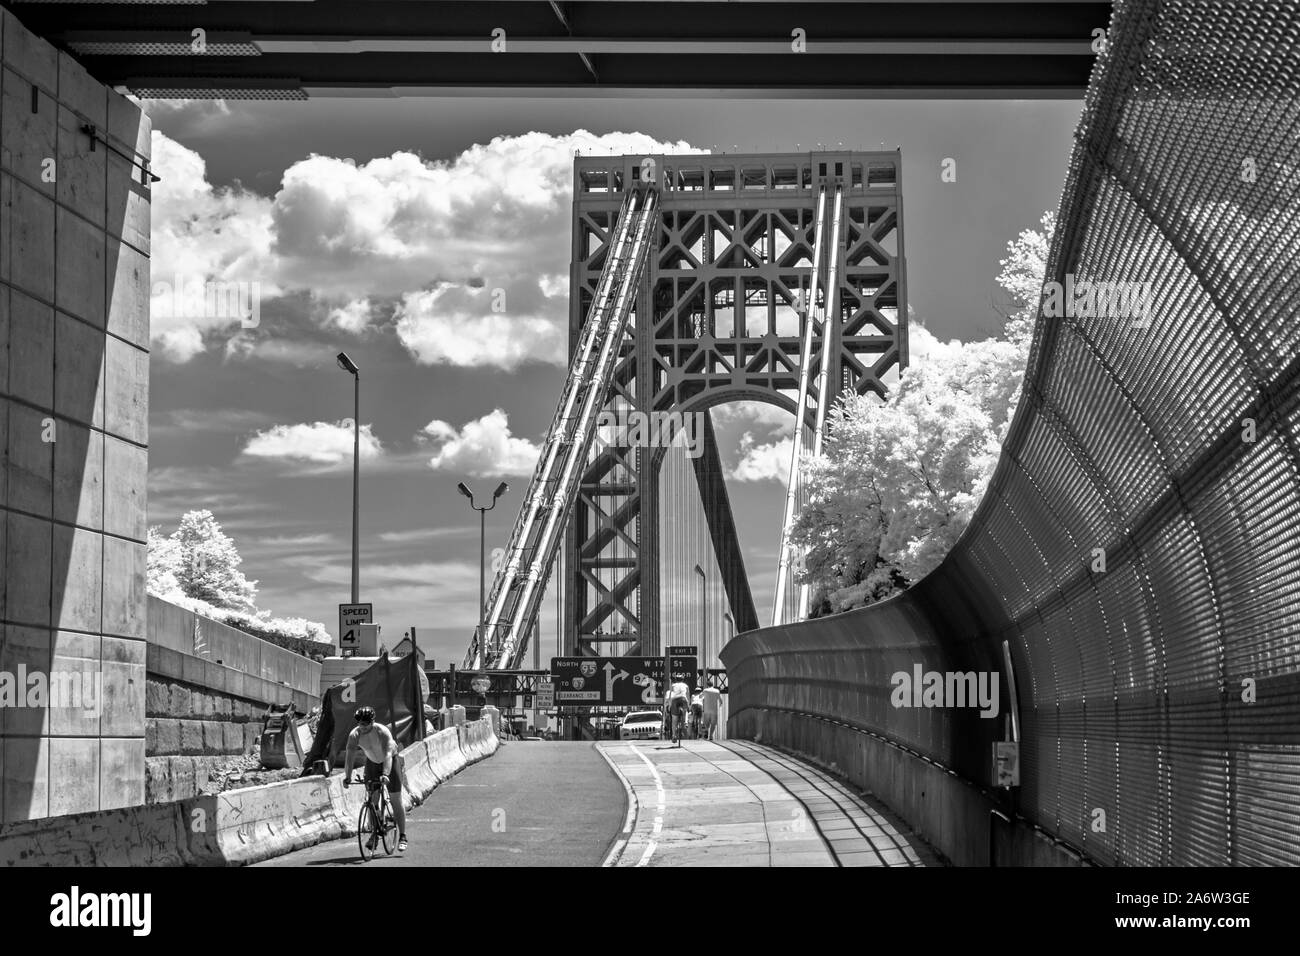 Washington Bridge NYC GWB - Ein infared schwarz-weiß Bild von der George Washington Brücke während des Sommers mit puffy Clouds. Dieses Bild ist frei Stockfoto